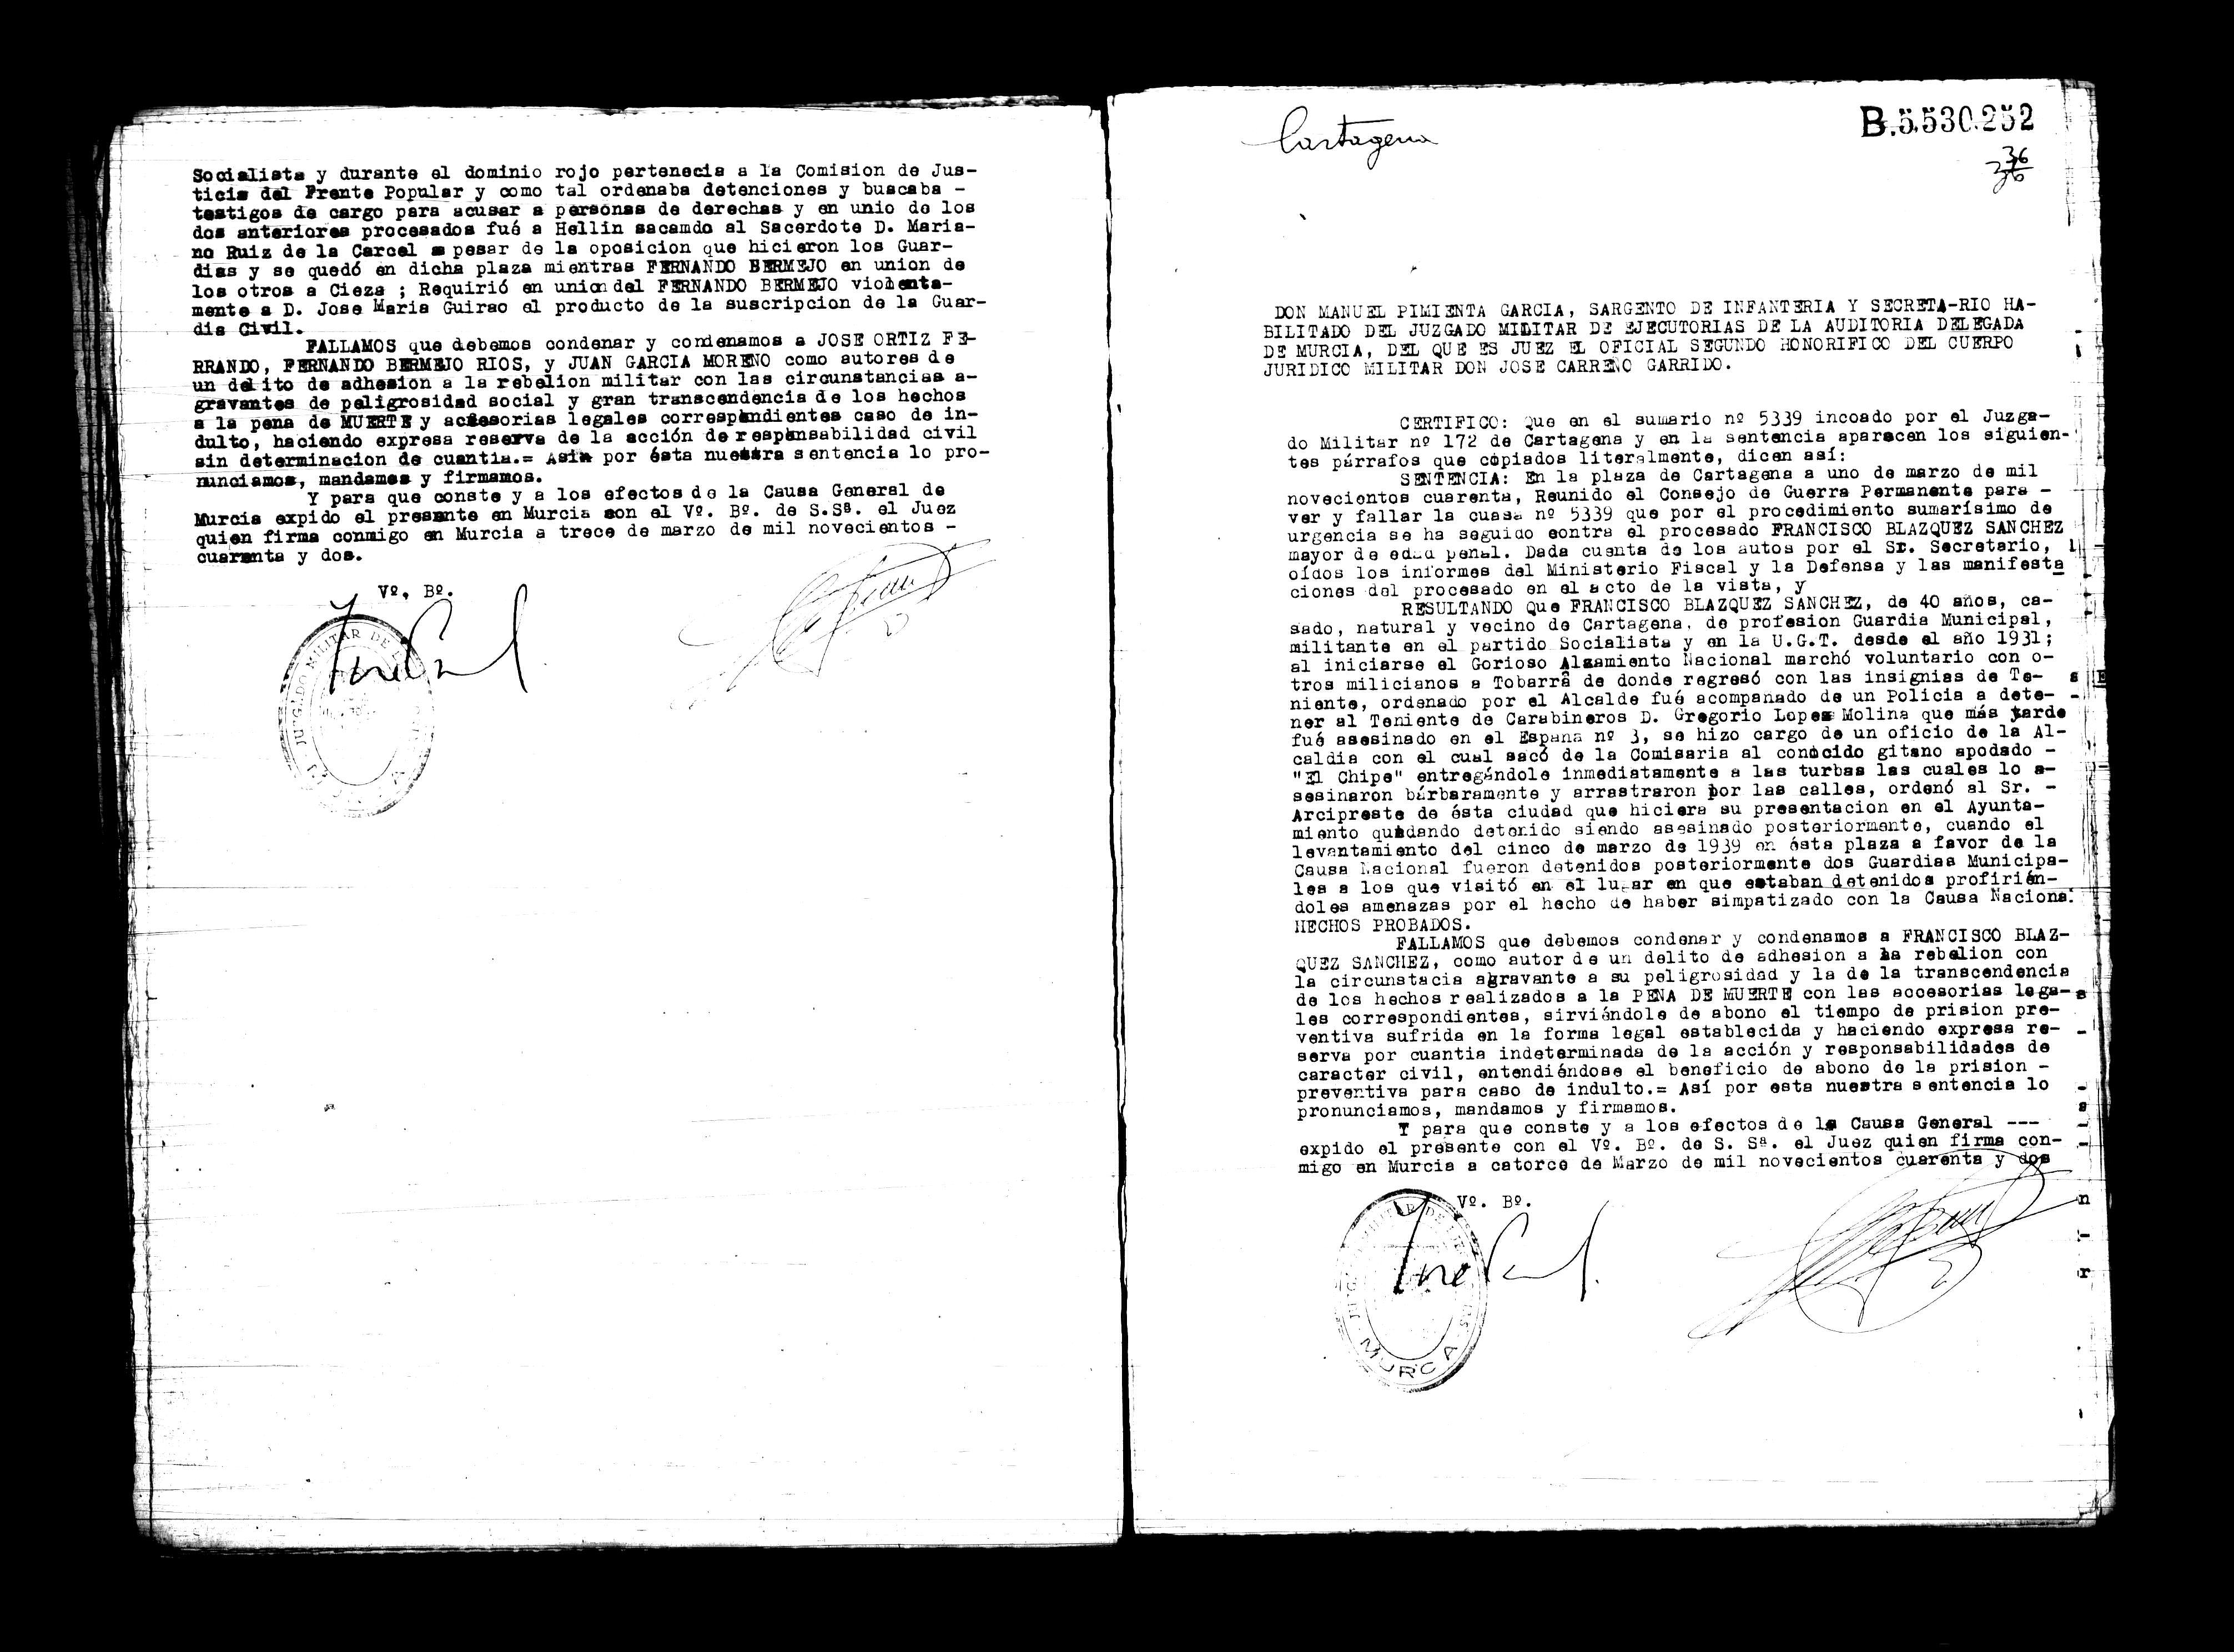 Certificado de la sentencia pronunciada contra Francisco Blázquez Sánchez, causa 5339, el 1 de marzo de 1940 en Cartagena.